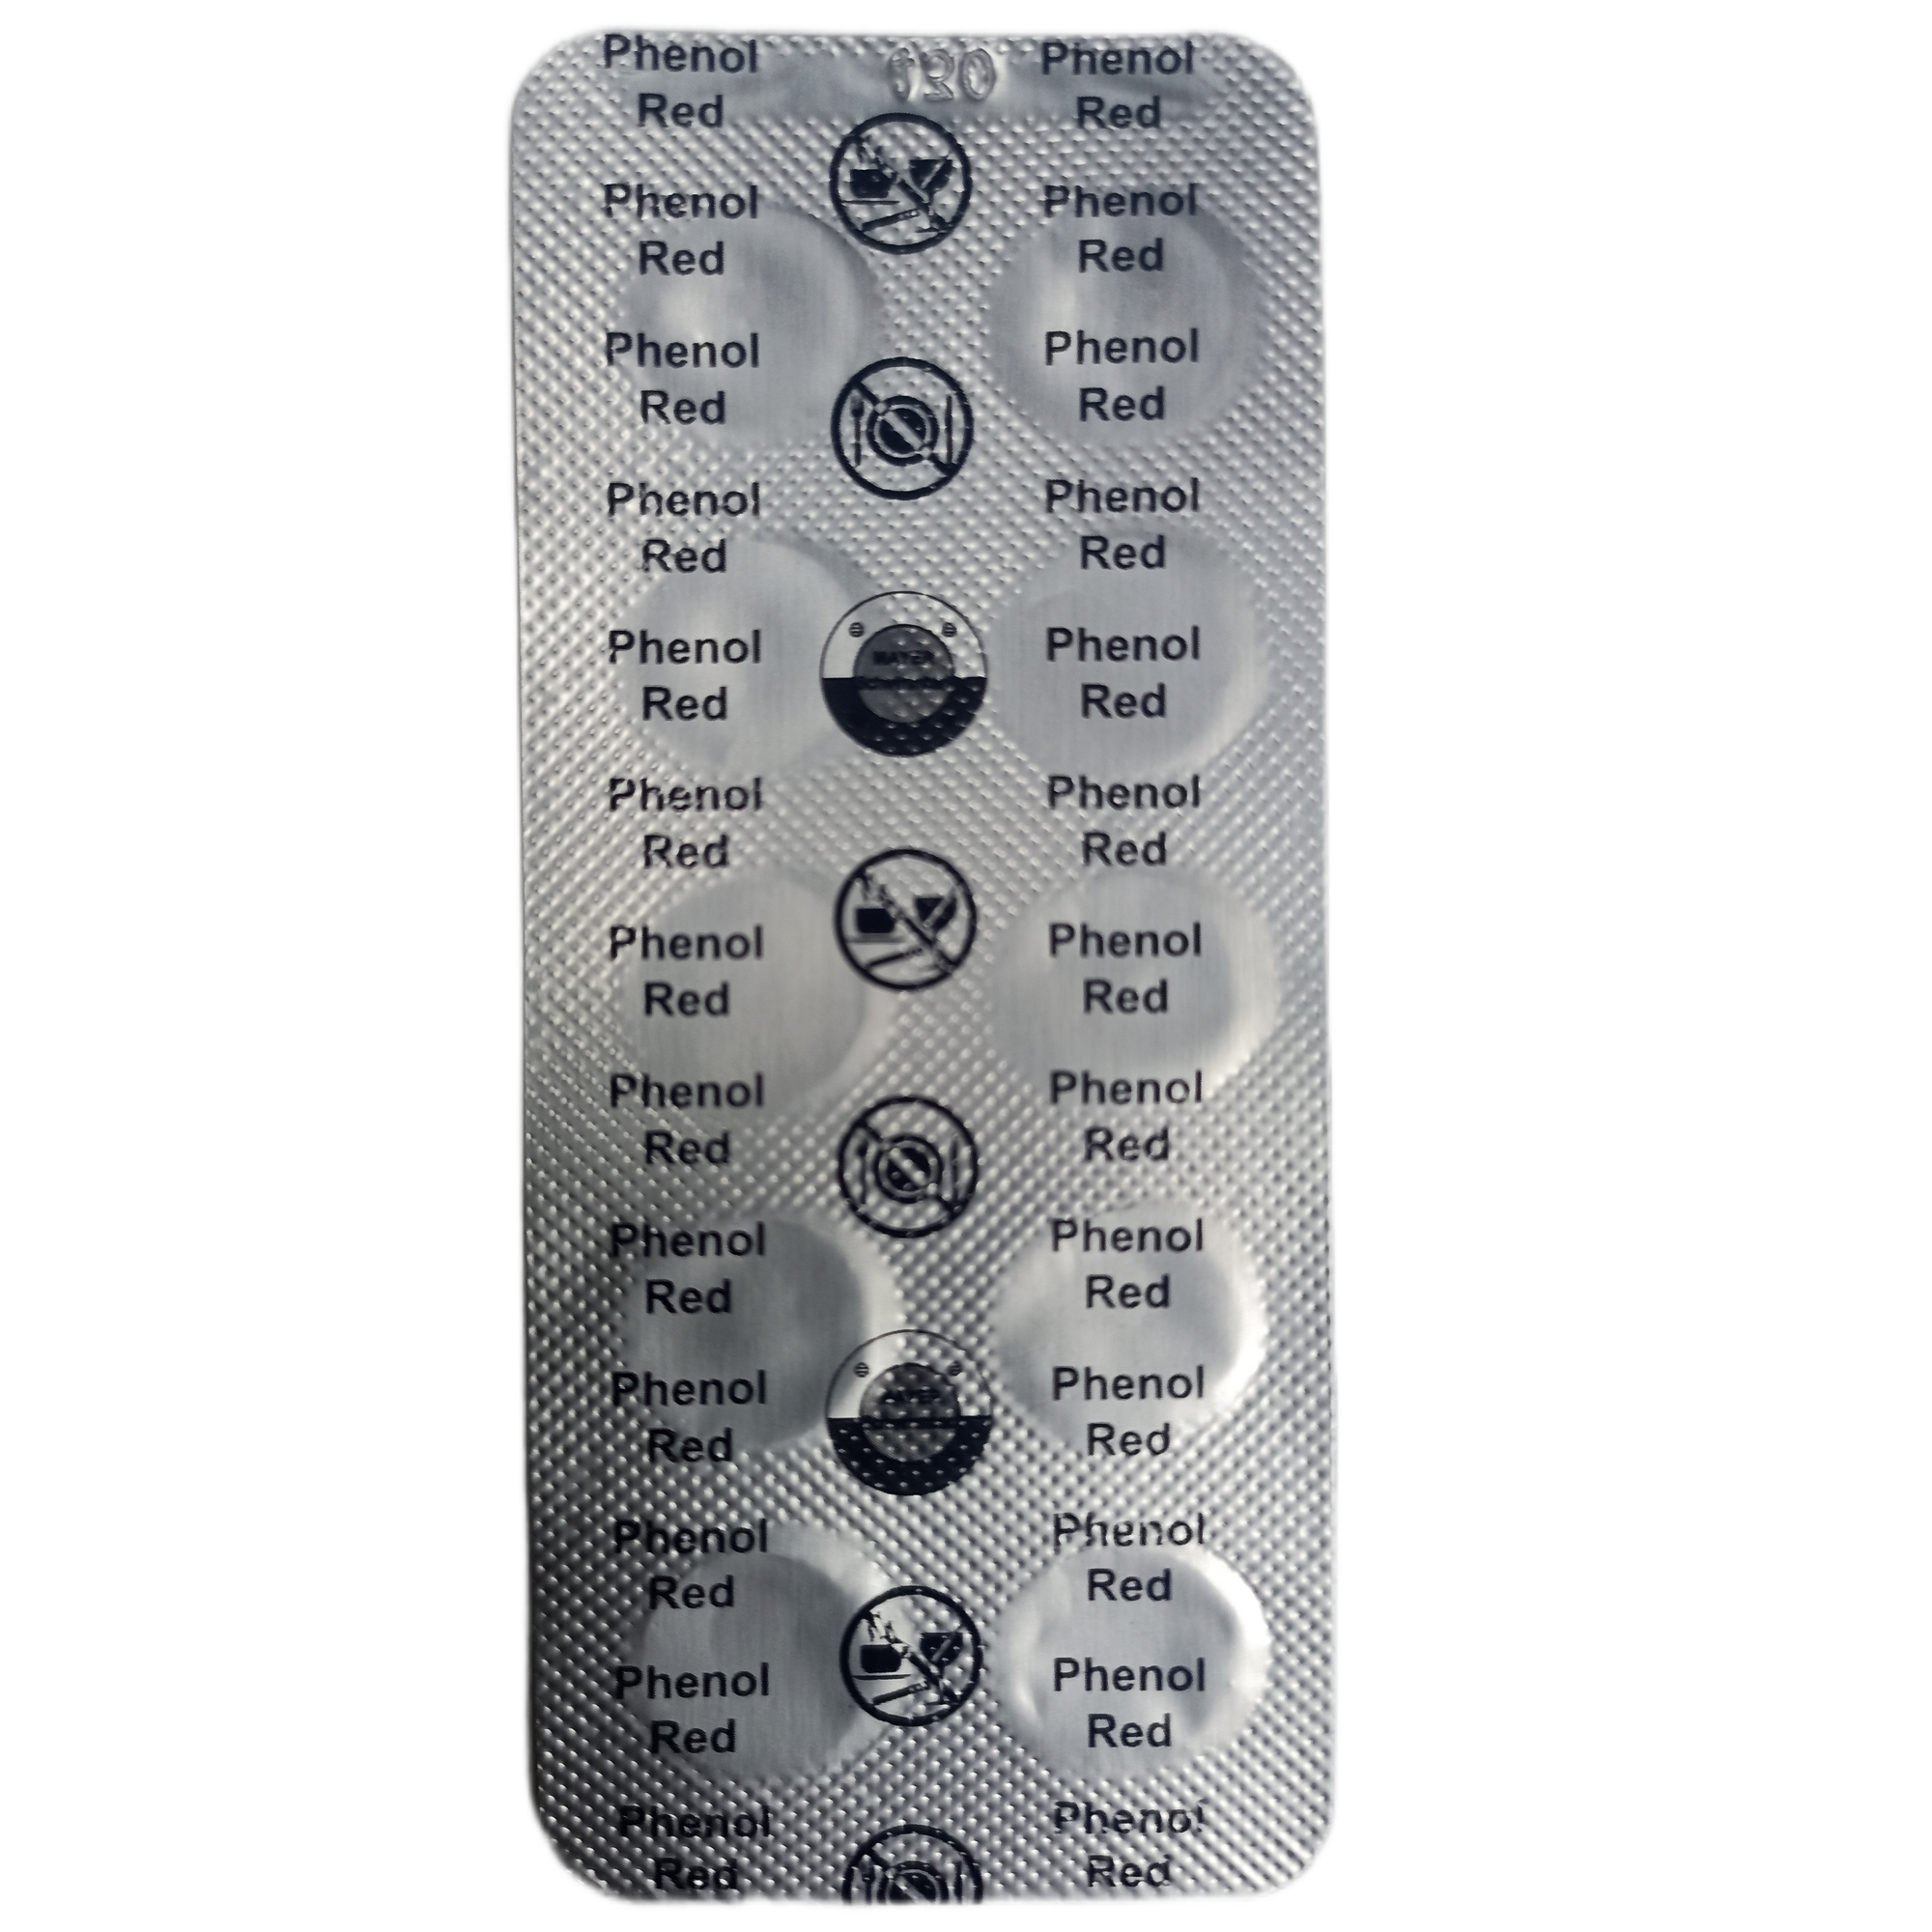 Таблетки Phenol Red для измерения pH (рН), Mayer Schwimmbad, 10 таблеток